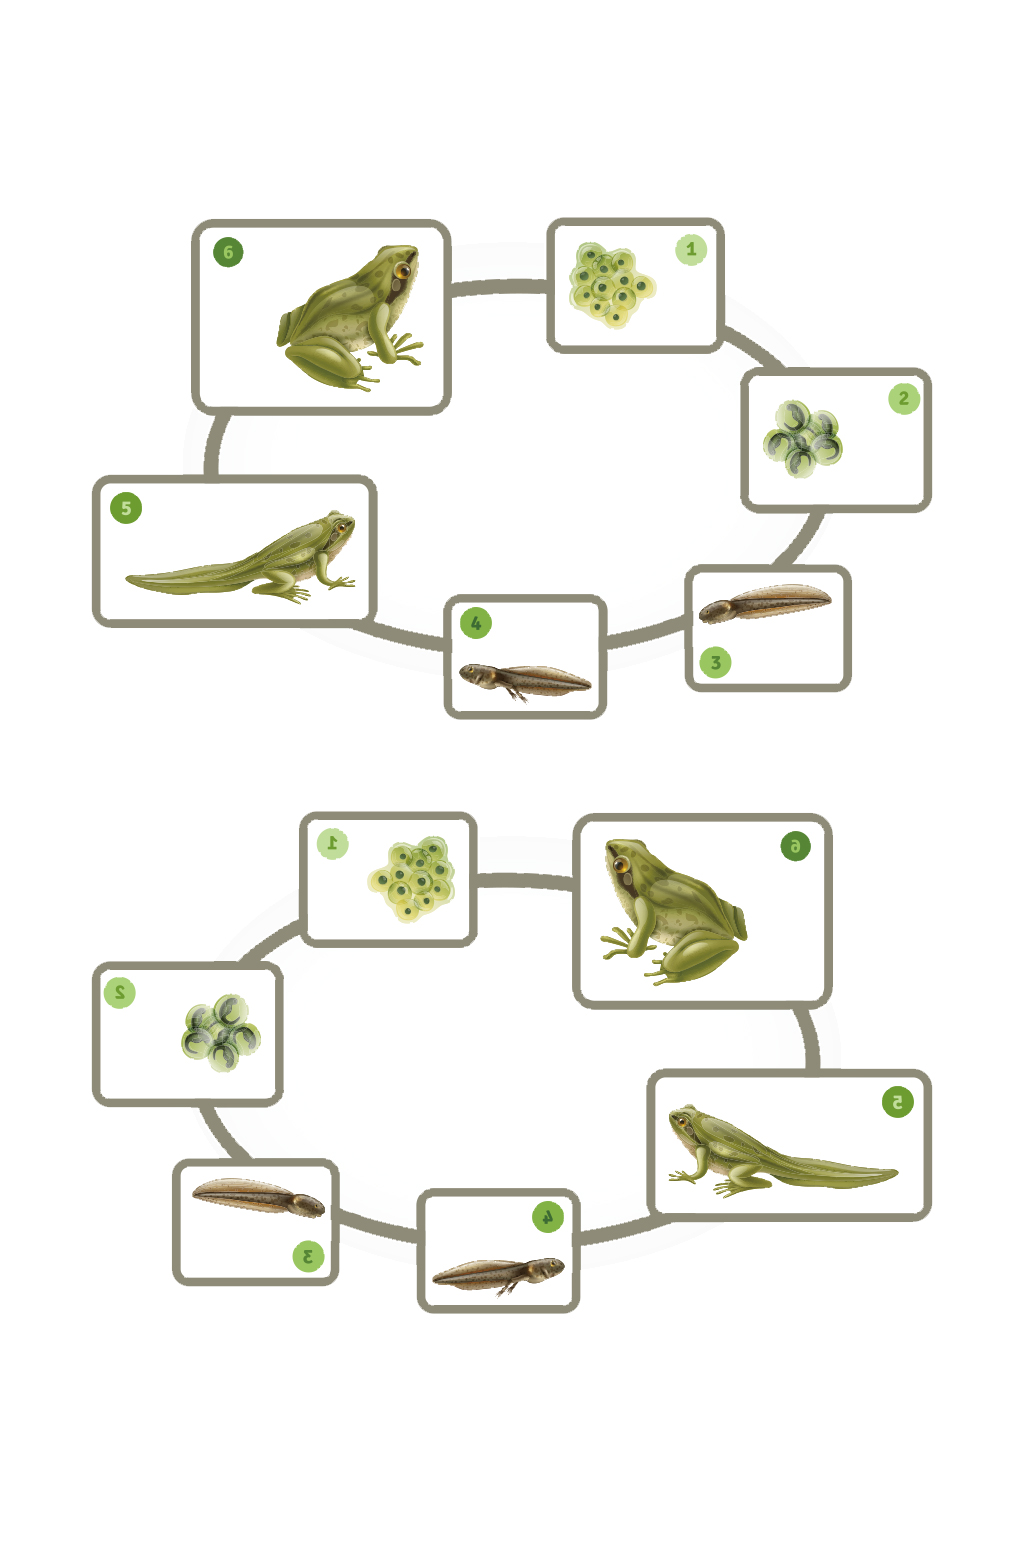 青蛙的发育过程简笔画图片